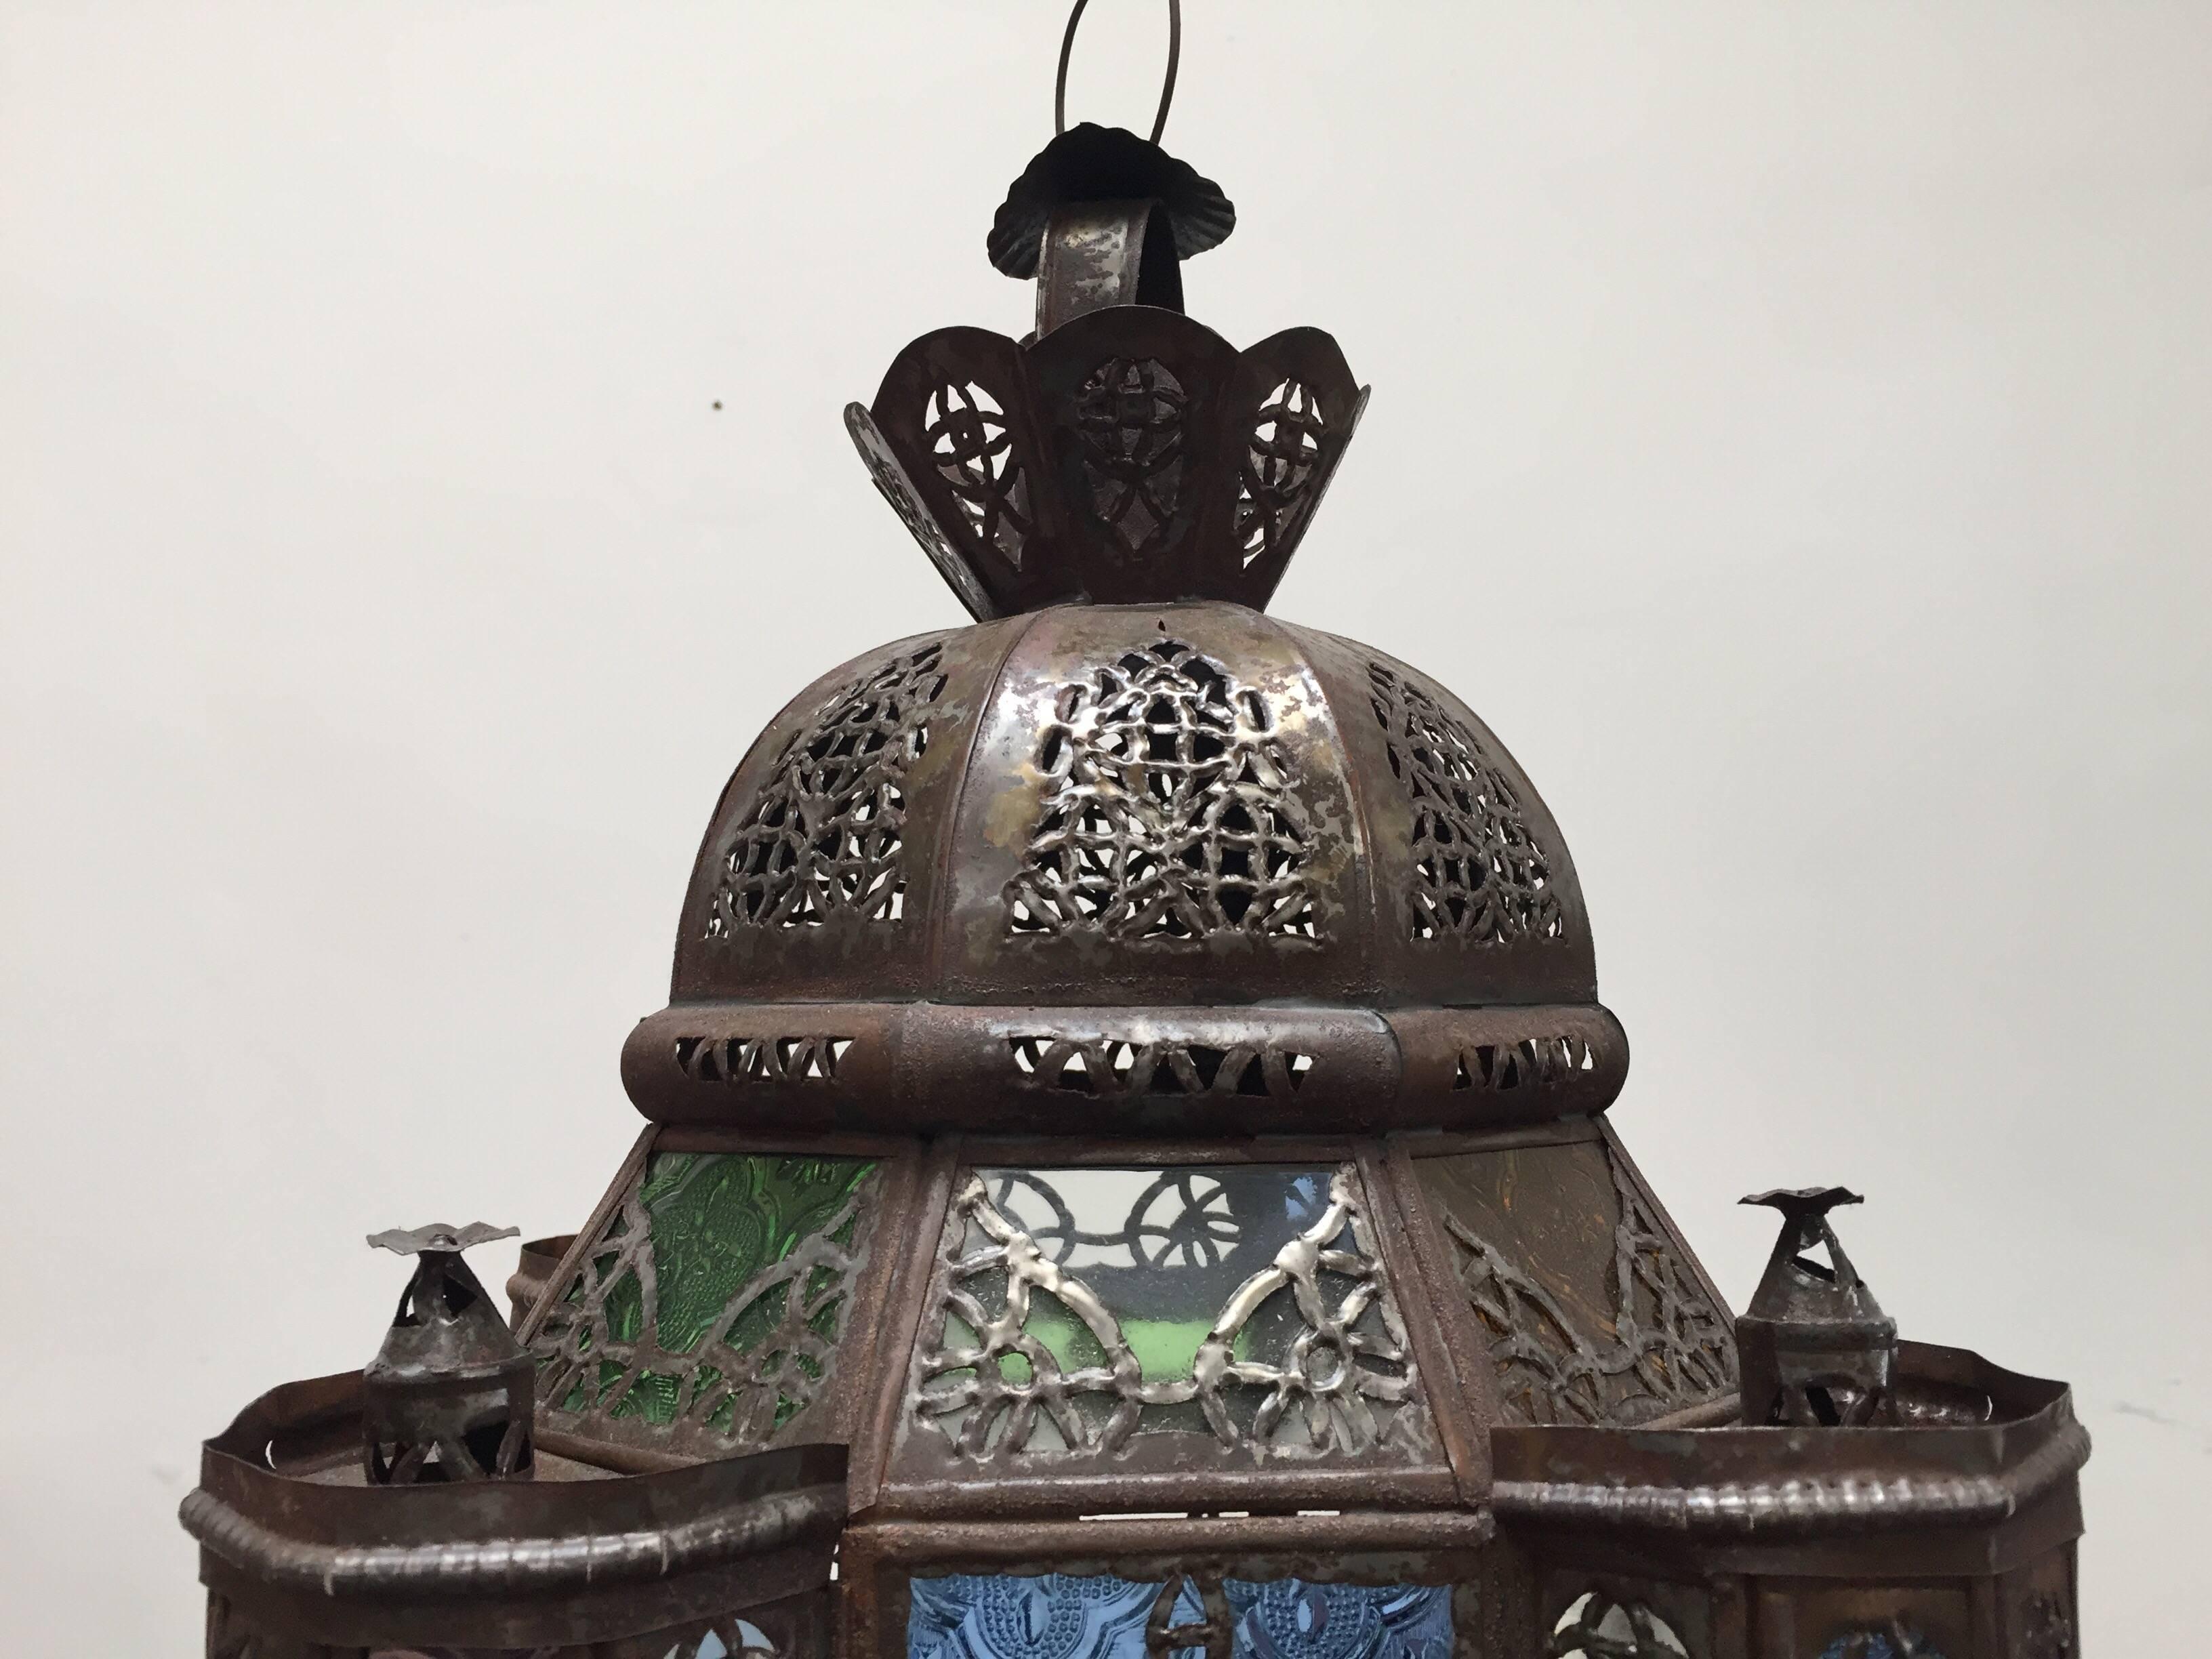 Handgefertigter marokkanischer Glasanhänger aus klarem und farbigem Glas, quadratische Form mit Türmen und einer Kuppel mit filigranem Metall.
Diese mehrfarbige marokkanische Glaslaterne mit maurischen Bögen aus filigranem Metall und farbigem Glas